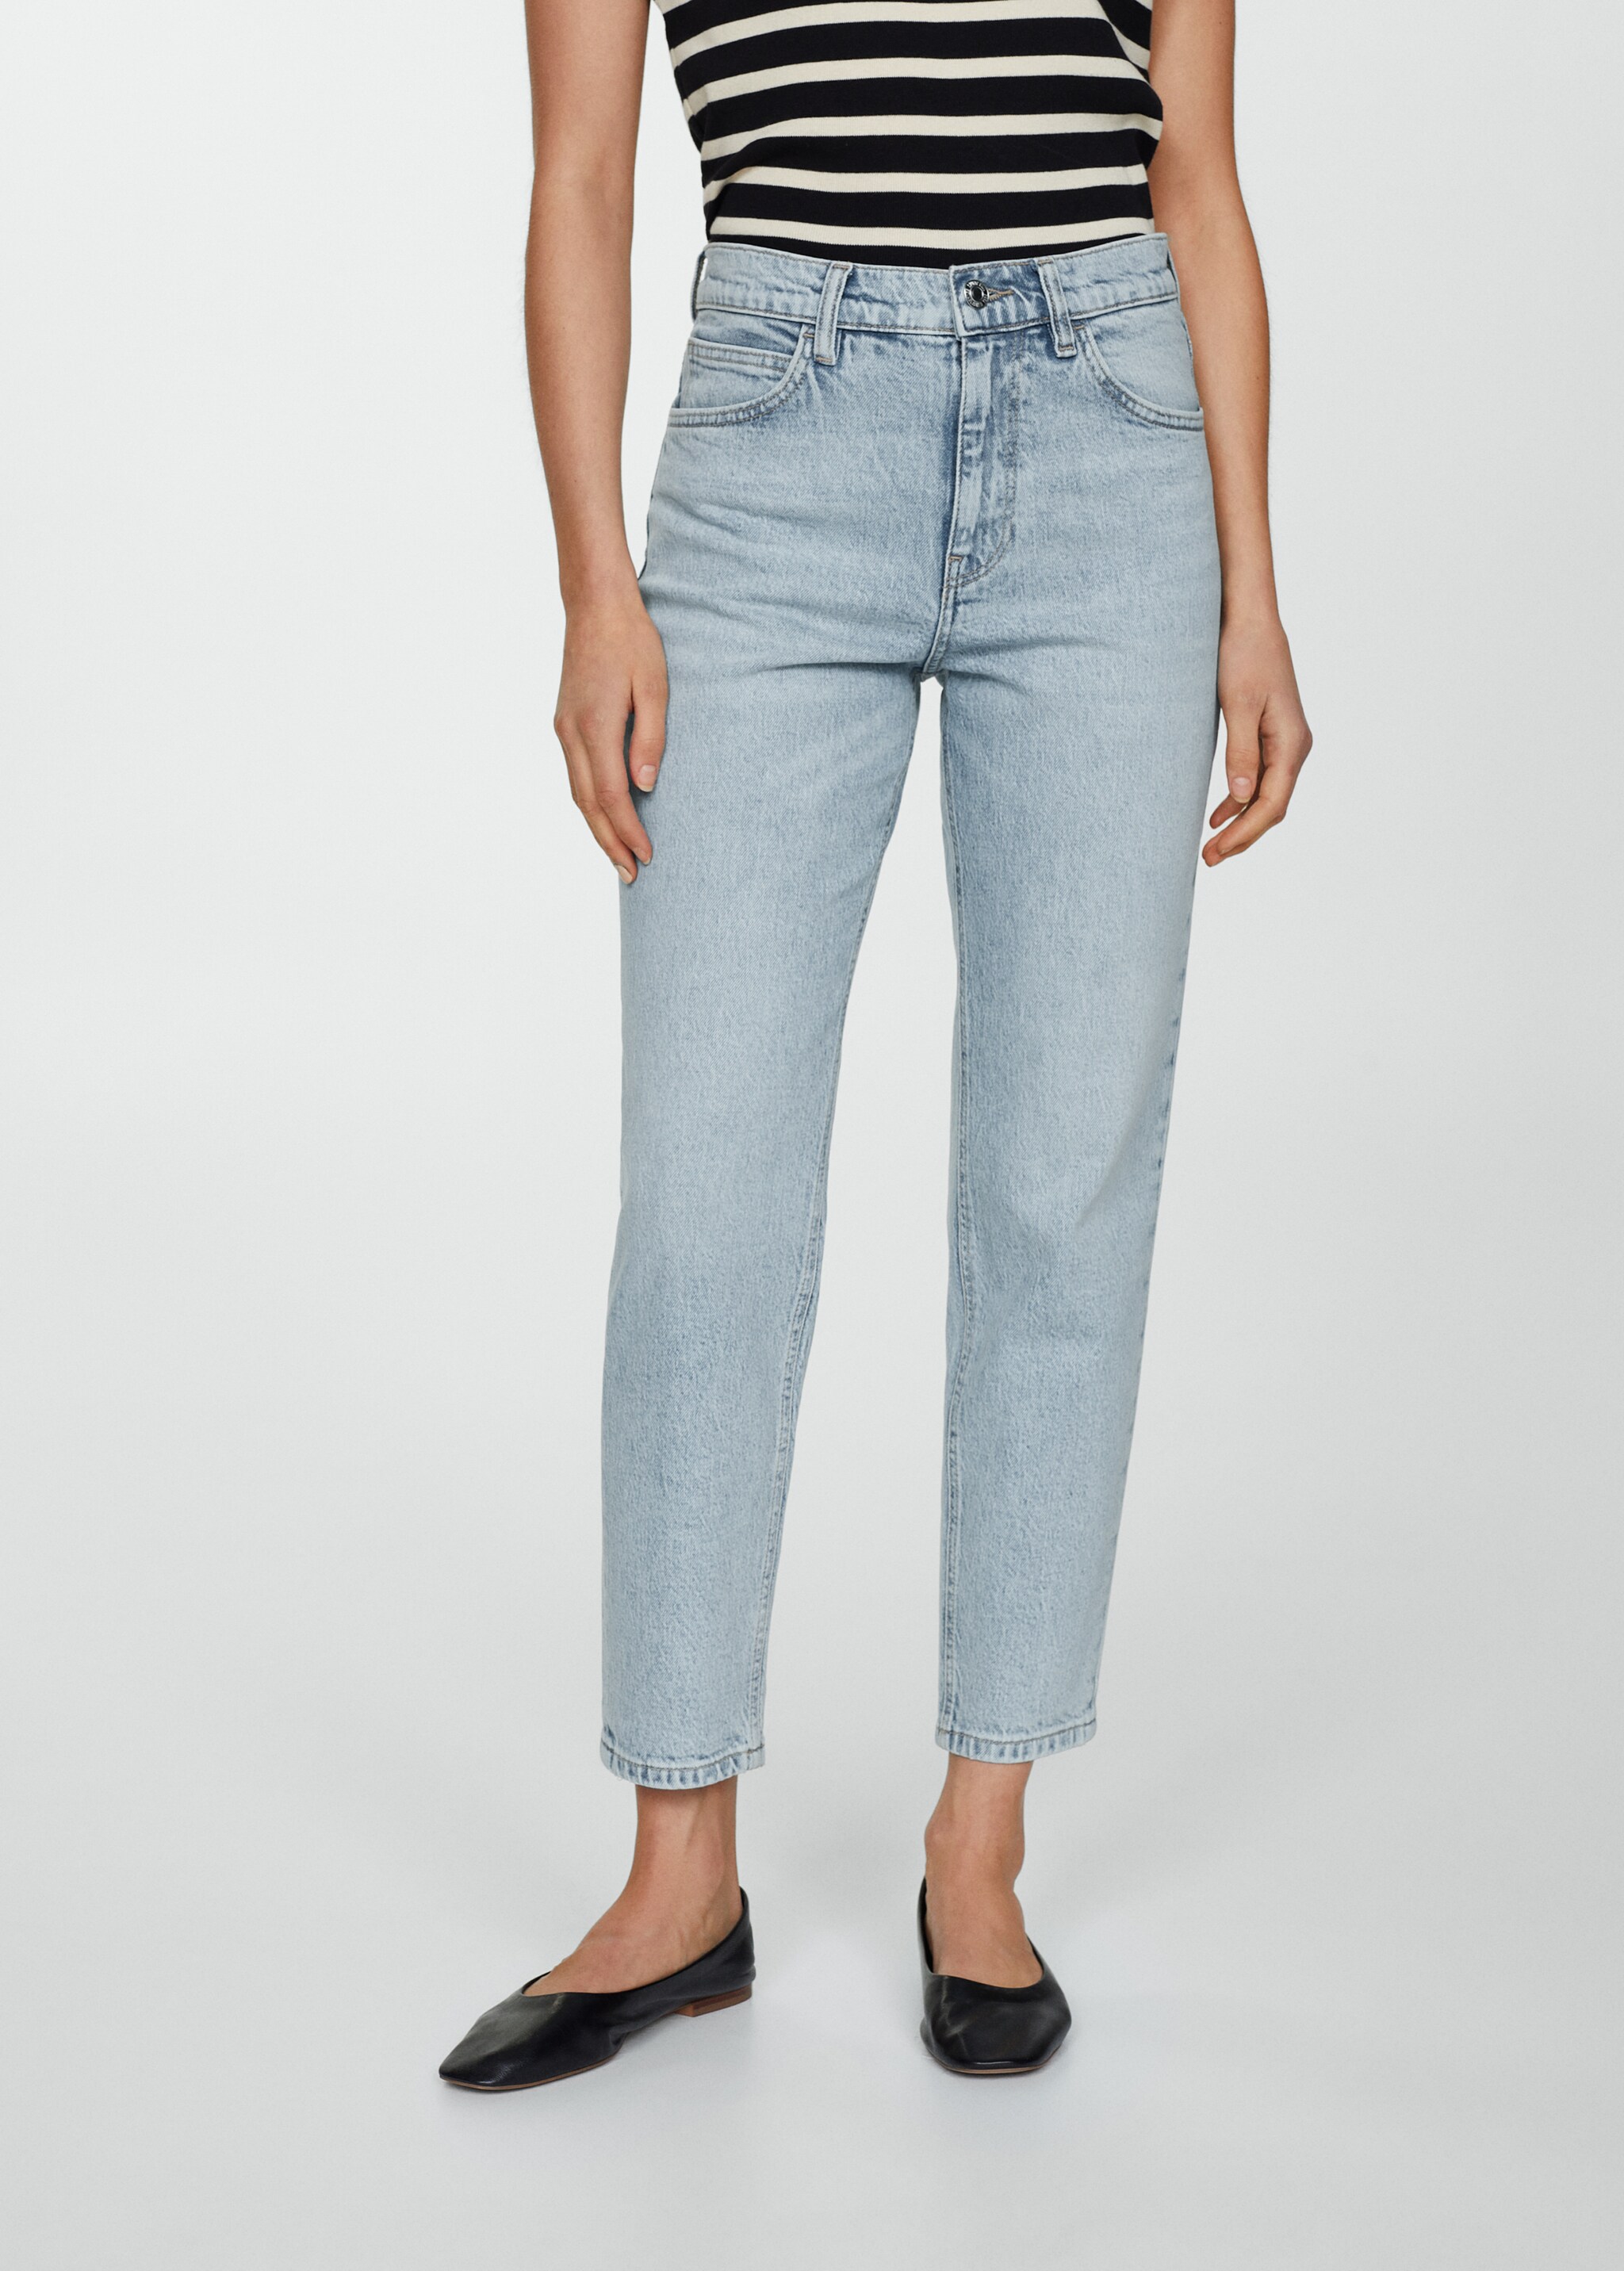 Комфортные джинсы Newmom с высокой талией - Средний план